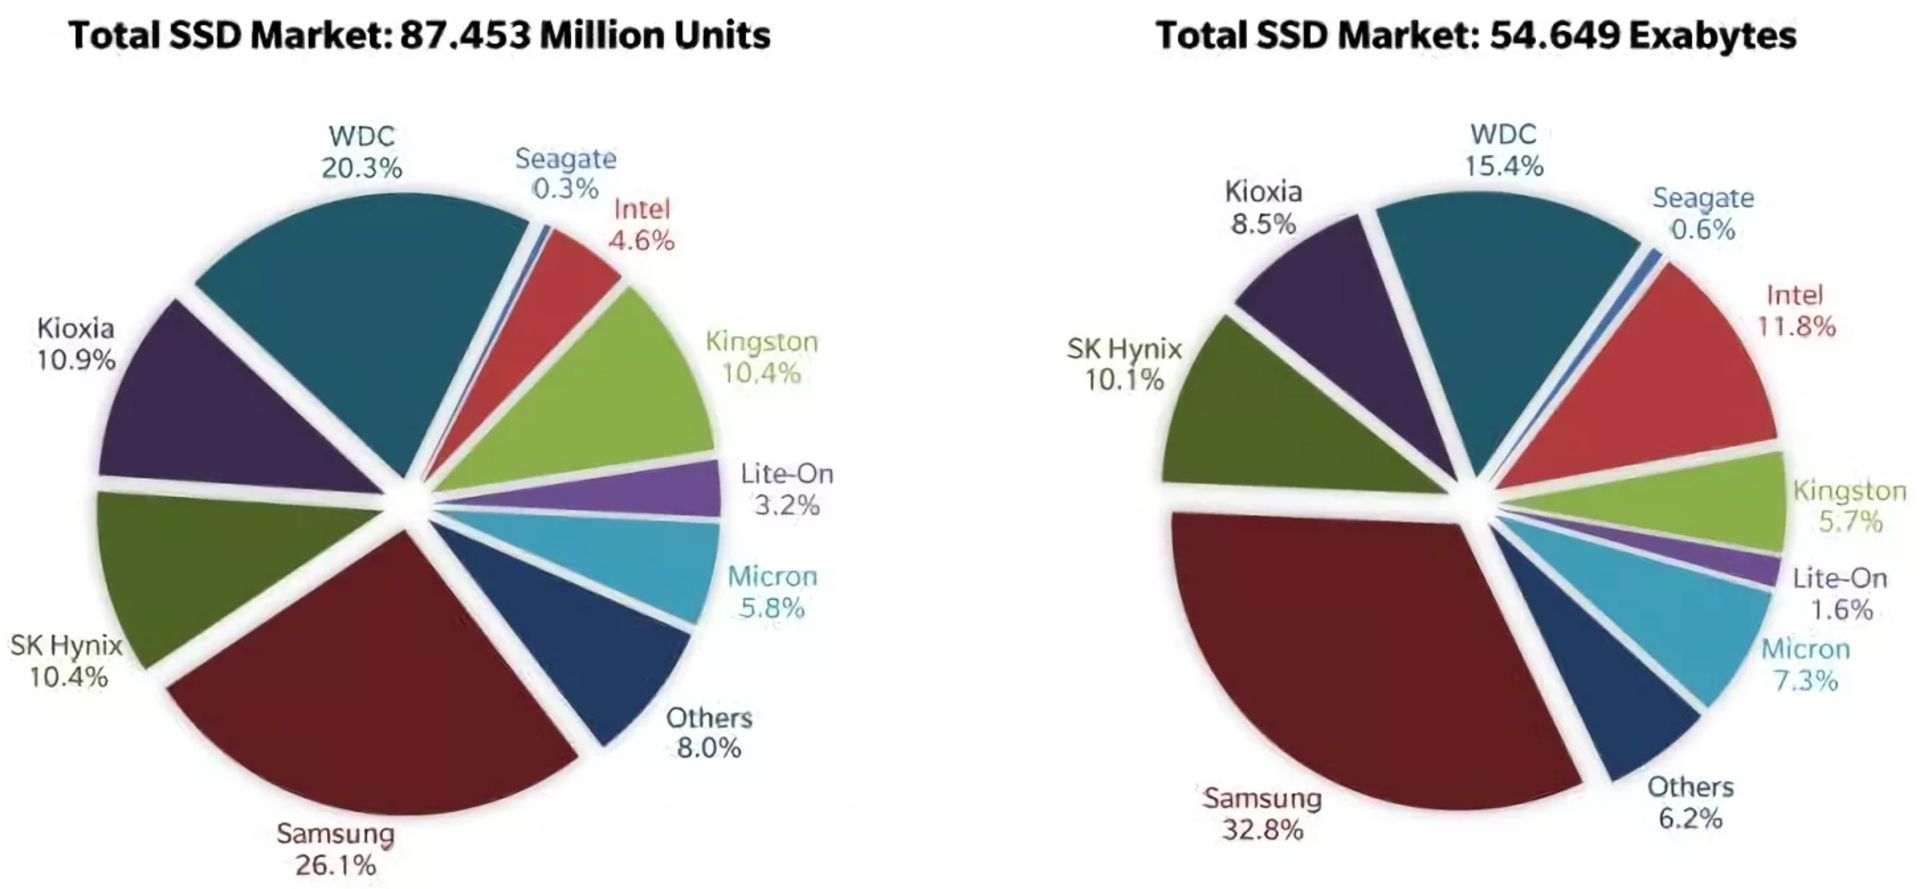  گزارش بازار SSD در سال ۲۰۲۰ ترند فوکوس